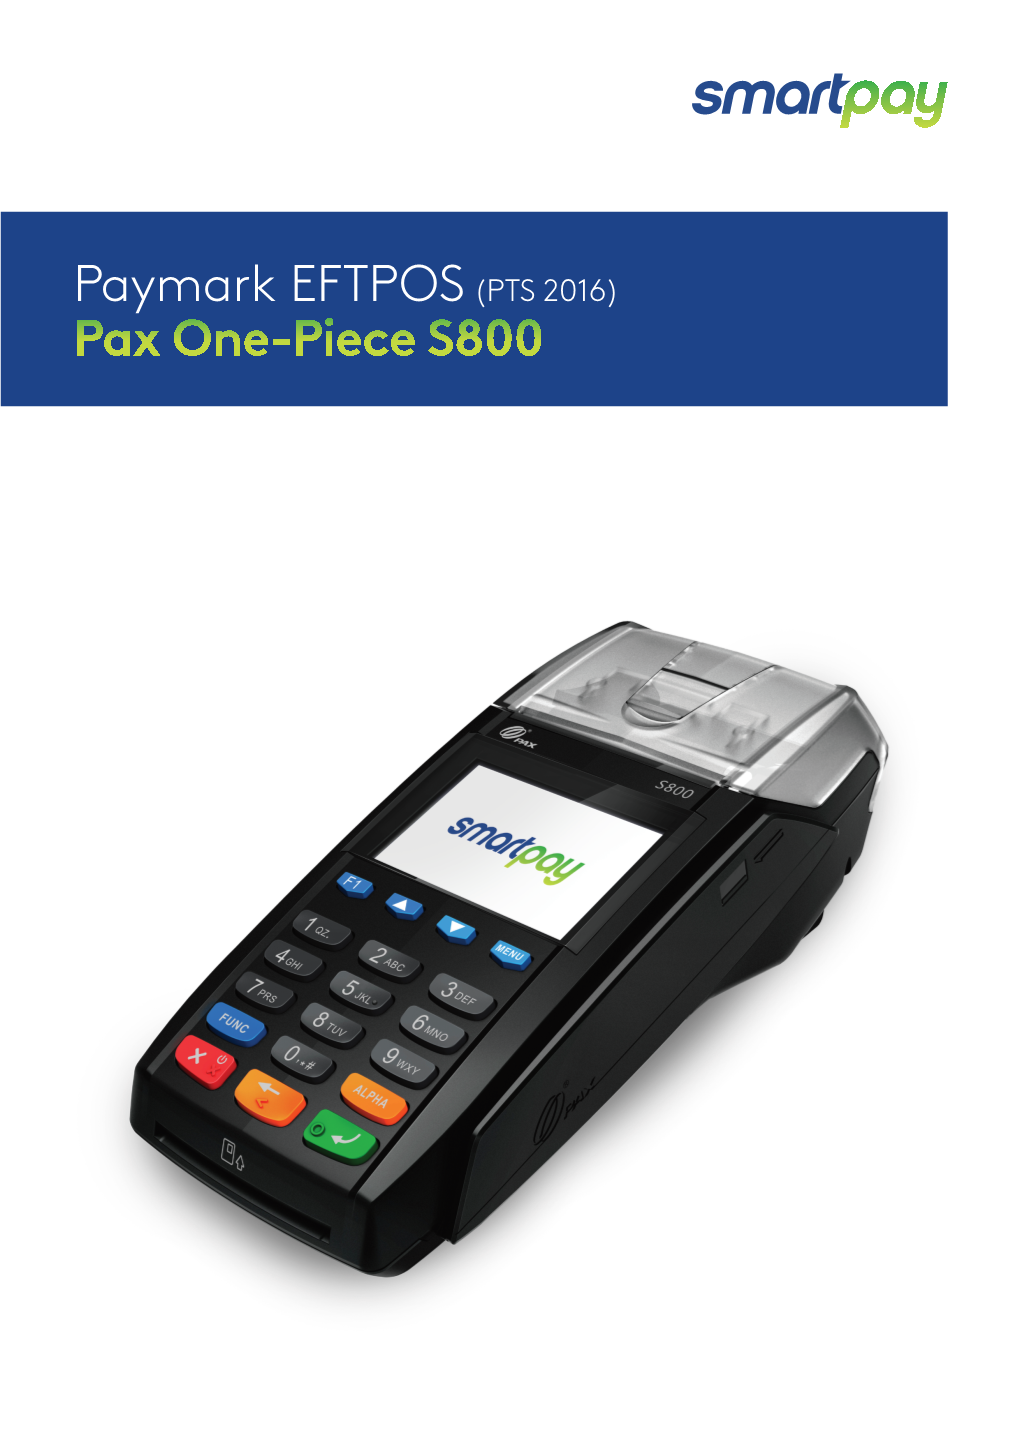 Paymark EFTPOS(PTS 2016) Pax One-Piece S800